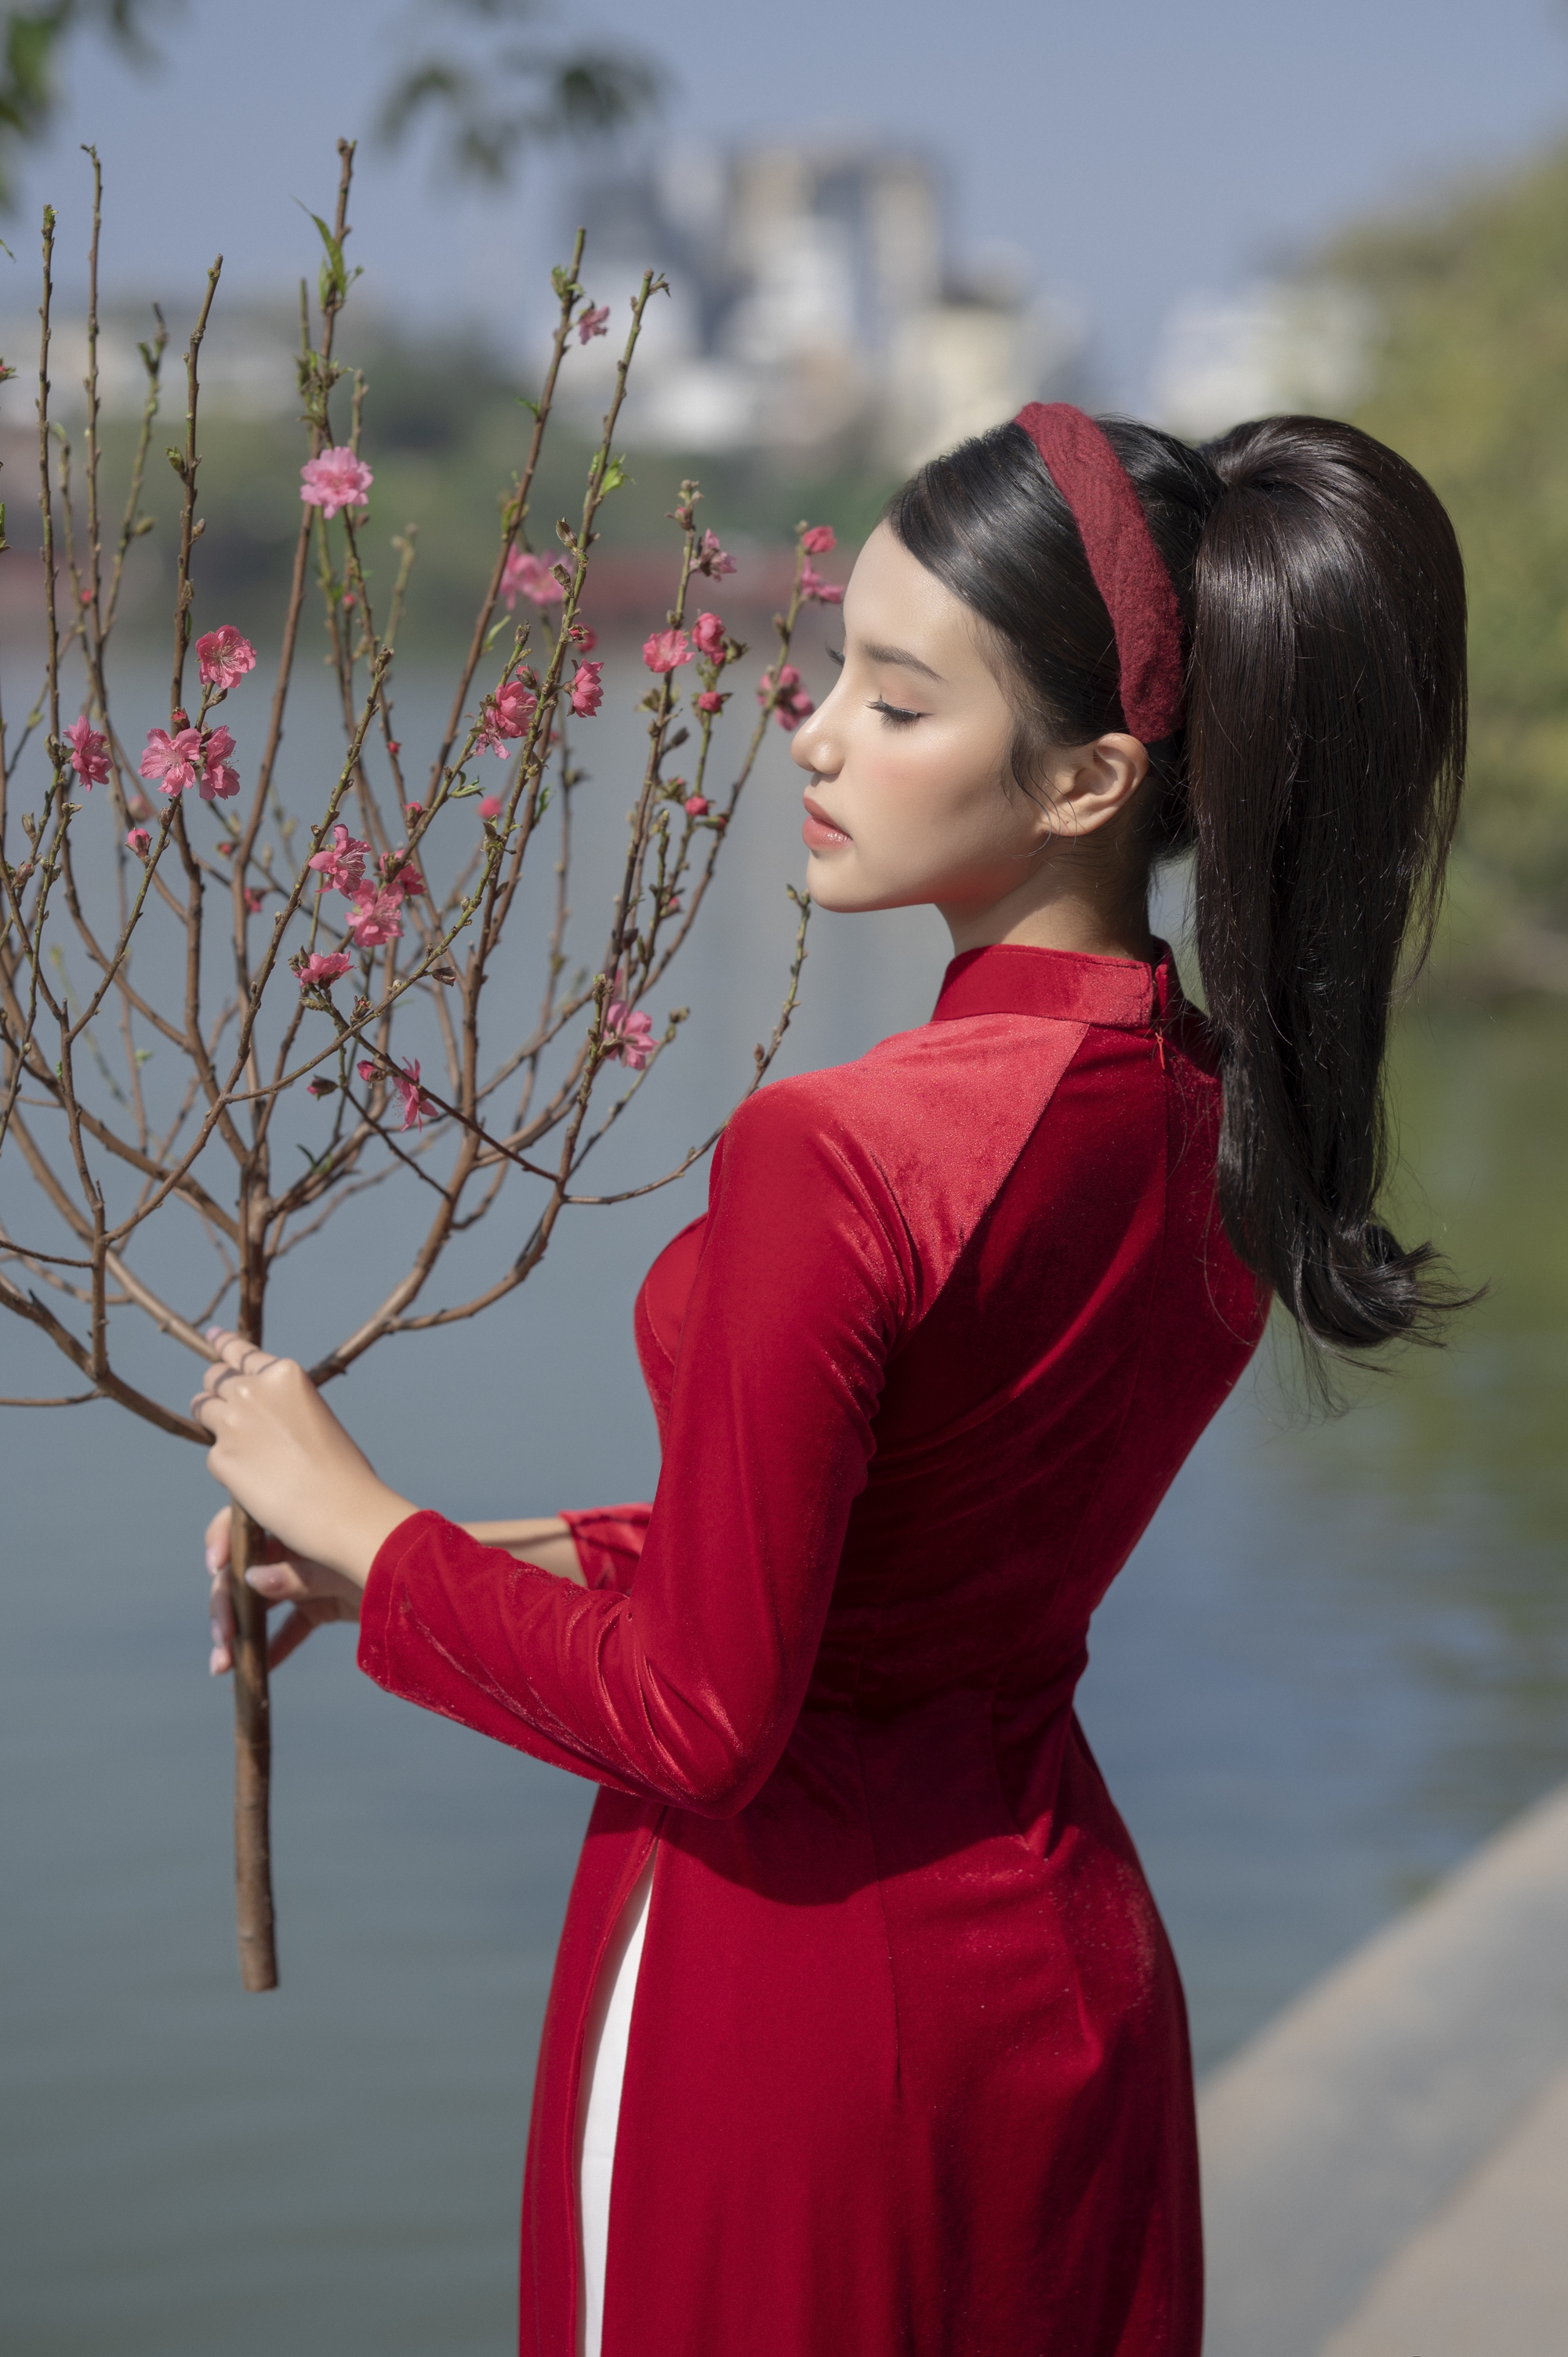 Á hậu Hương Ly khoe nhan sắc ngọt ngào trong những thiết kế áo dài đậm chất xuân - Ảnh 5.